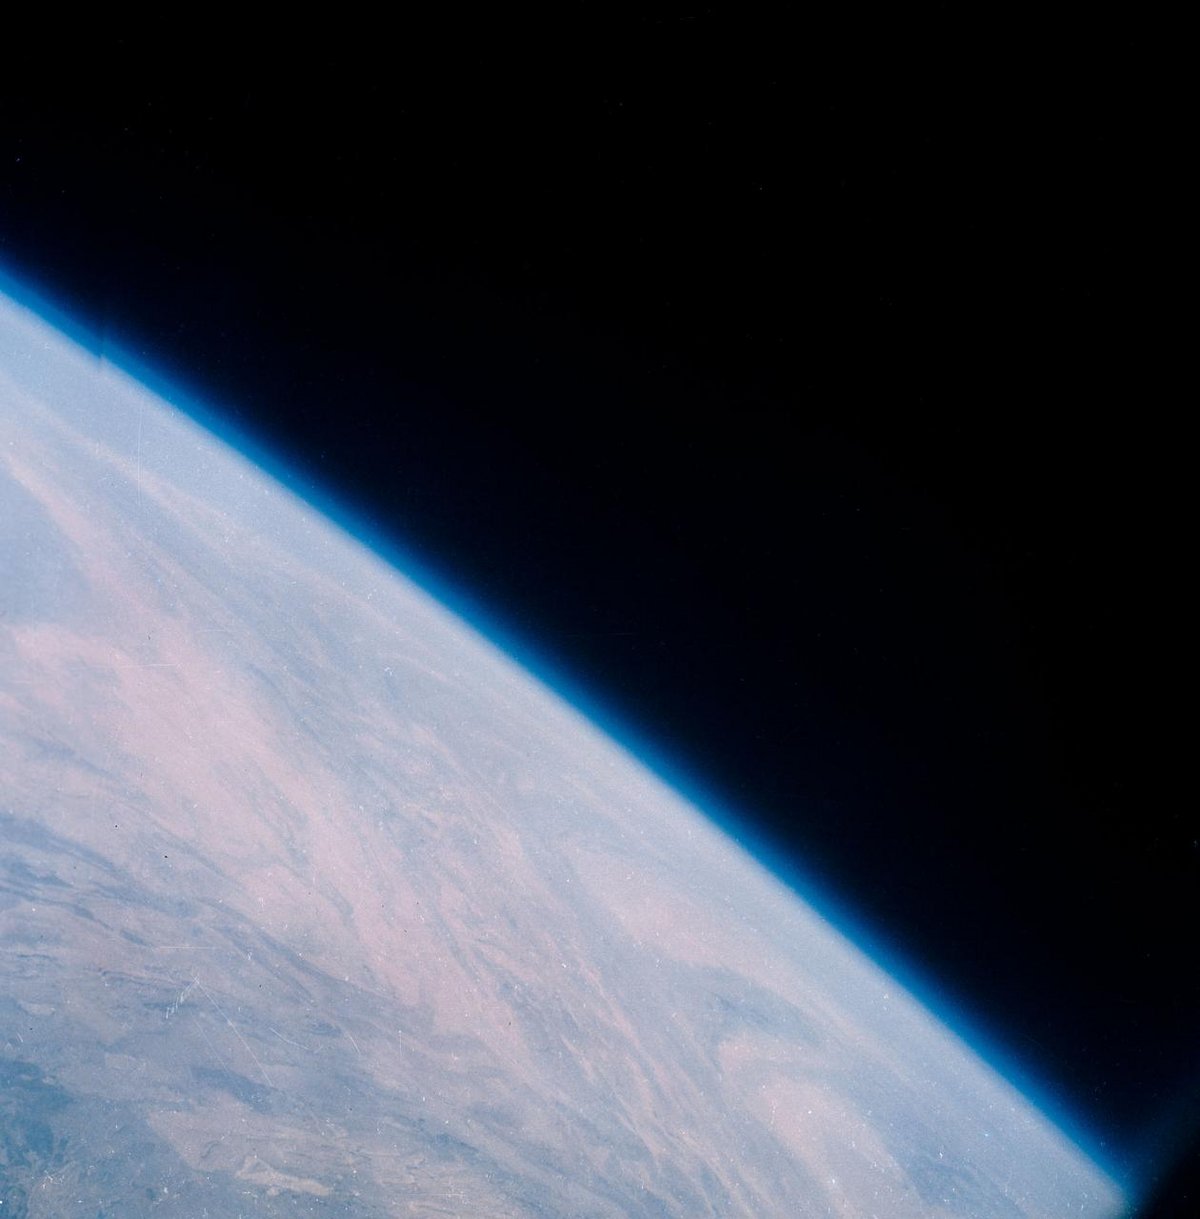 La fine atmosphère terrestre dans toute sa splendeur, photographiée par Gordon Cooper © NASA